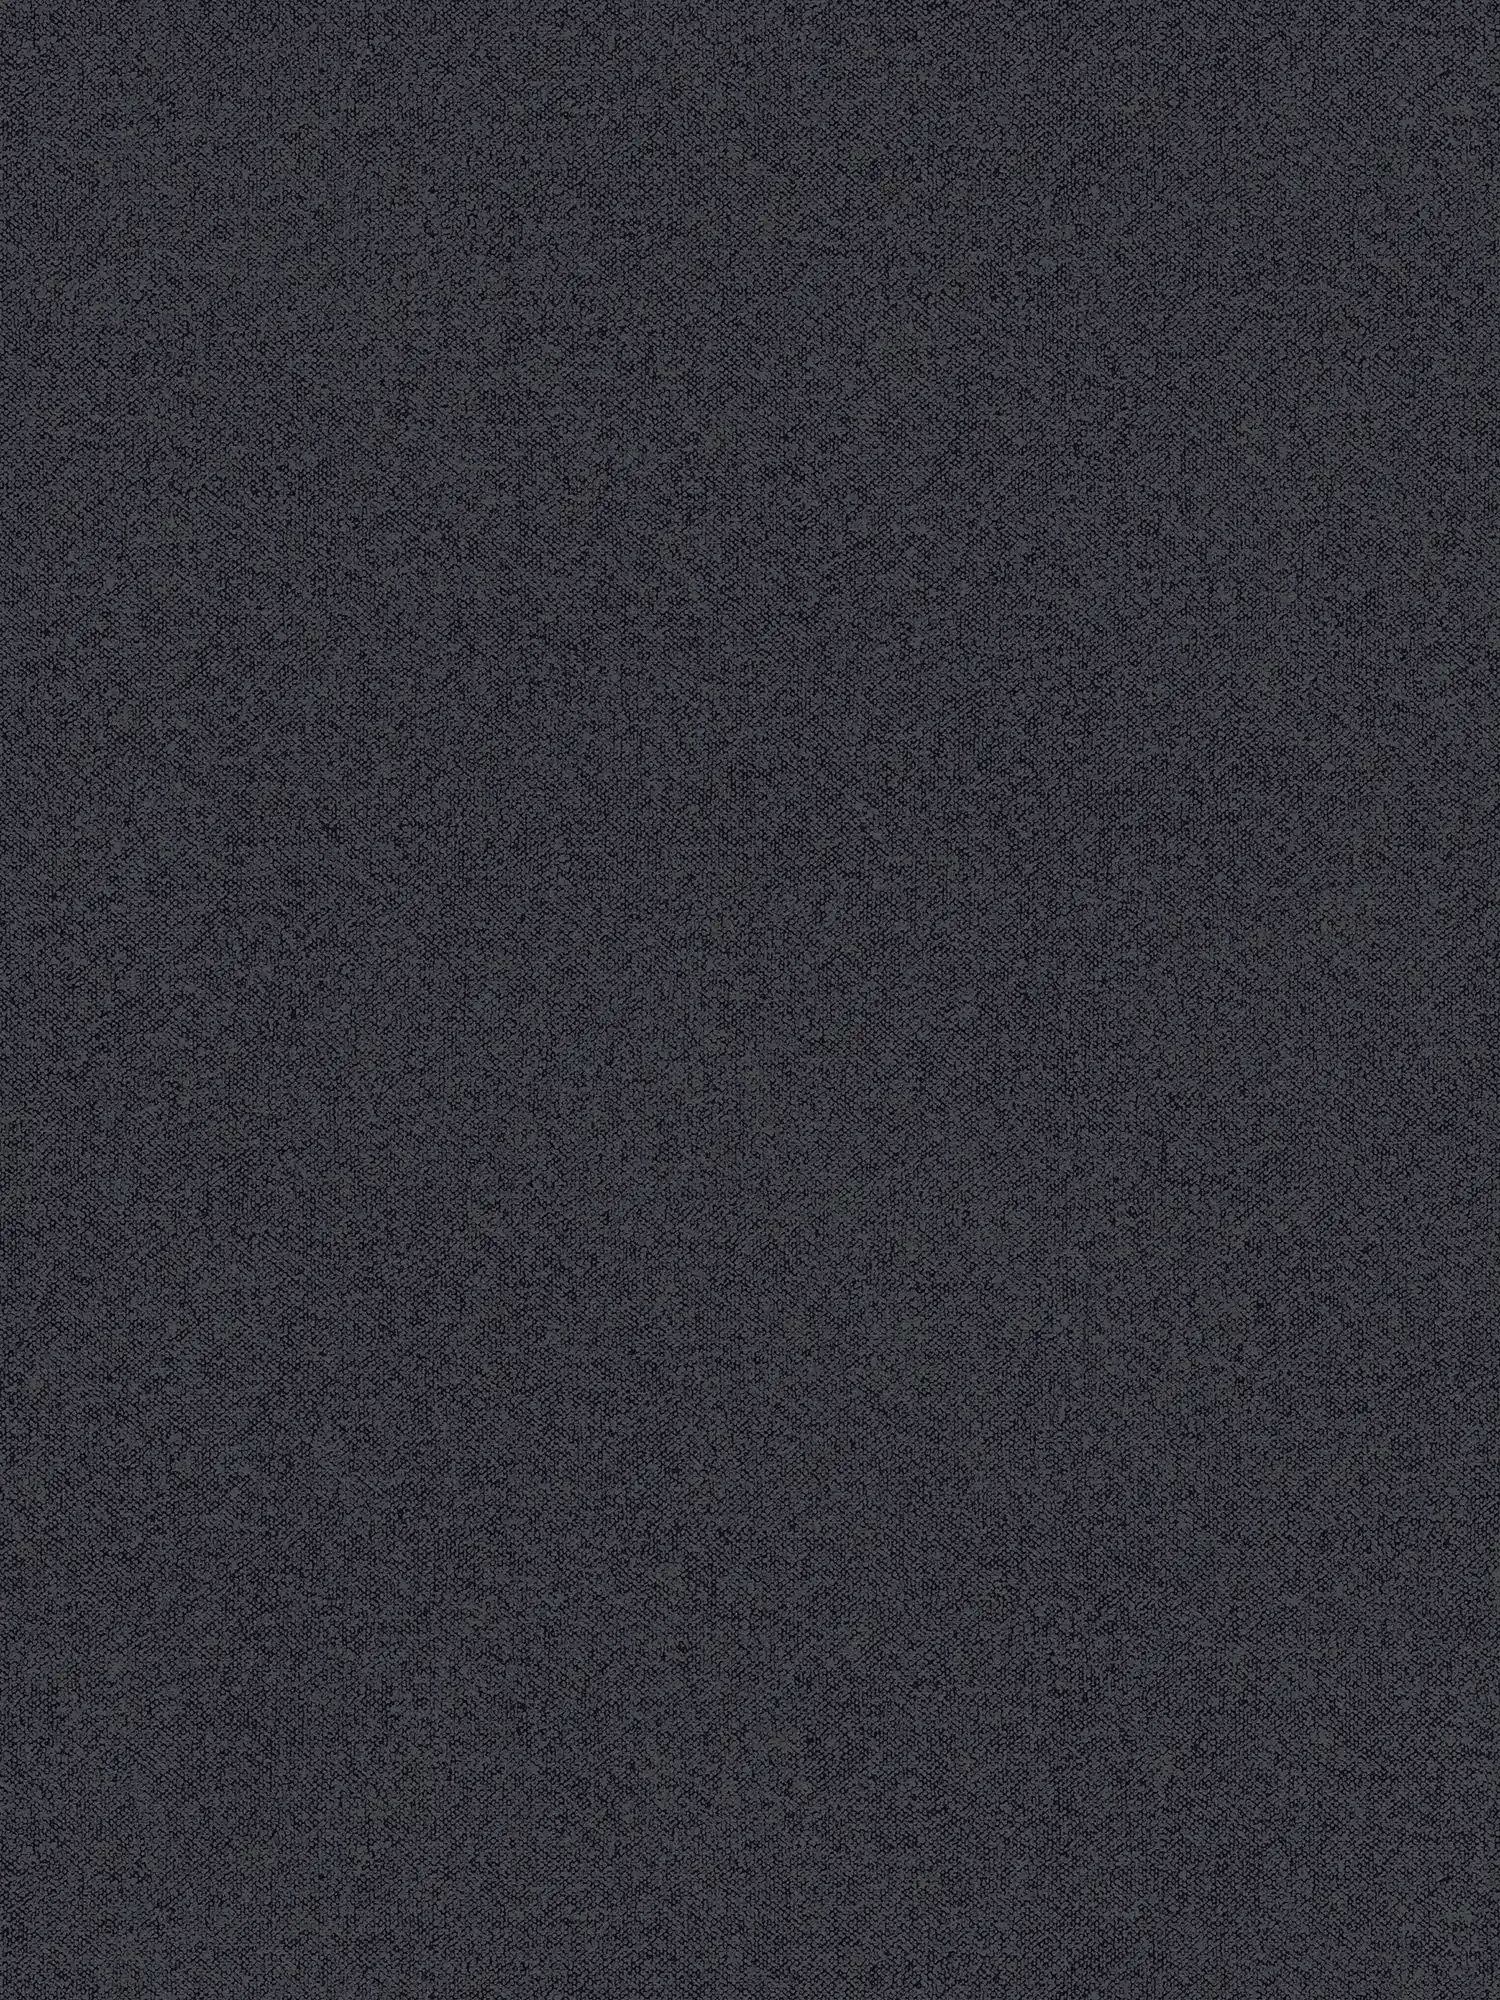 papel pintado texturizado liso con aspecto de lino - negro, gris
